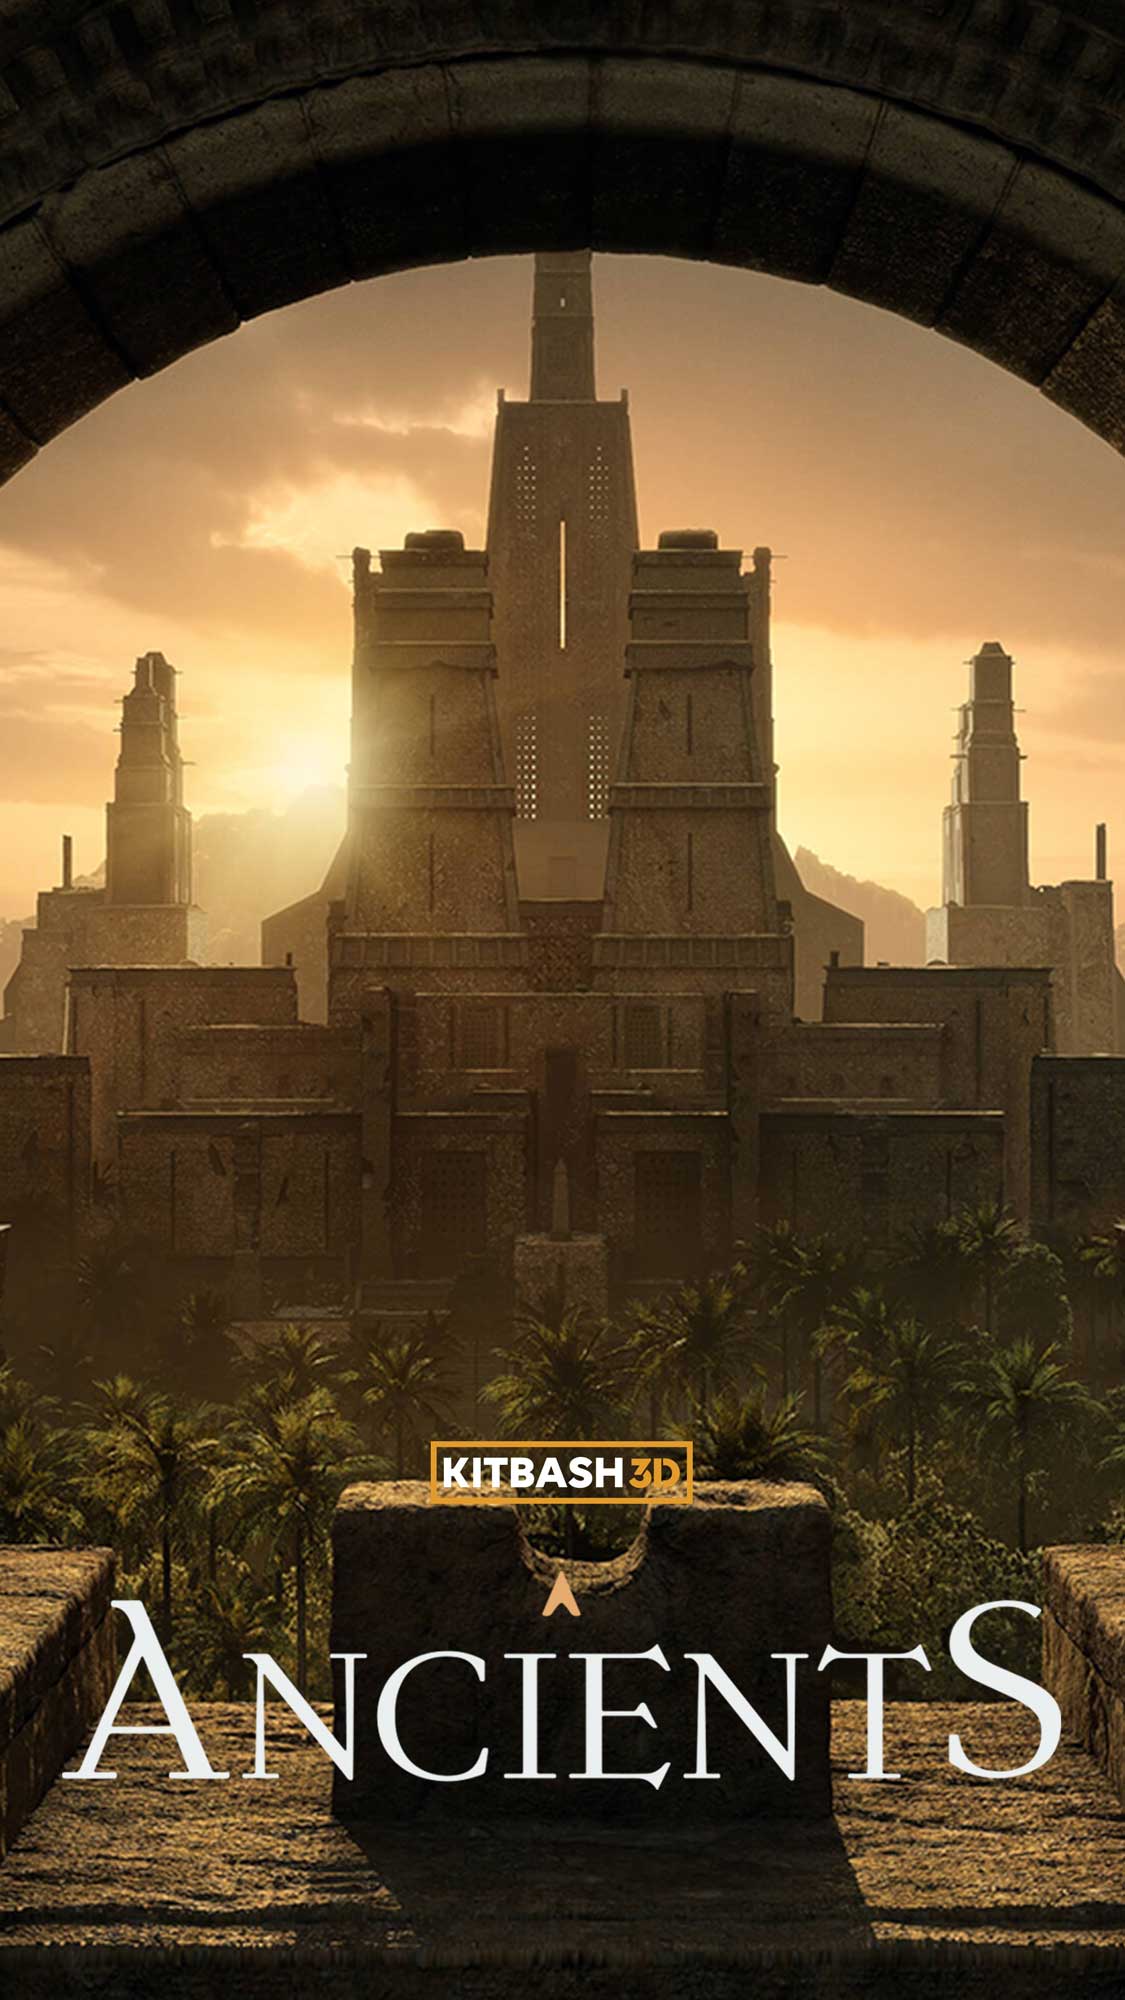 KitBash3D Ancients (repost)